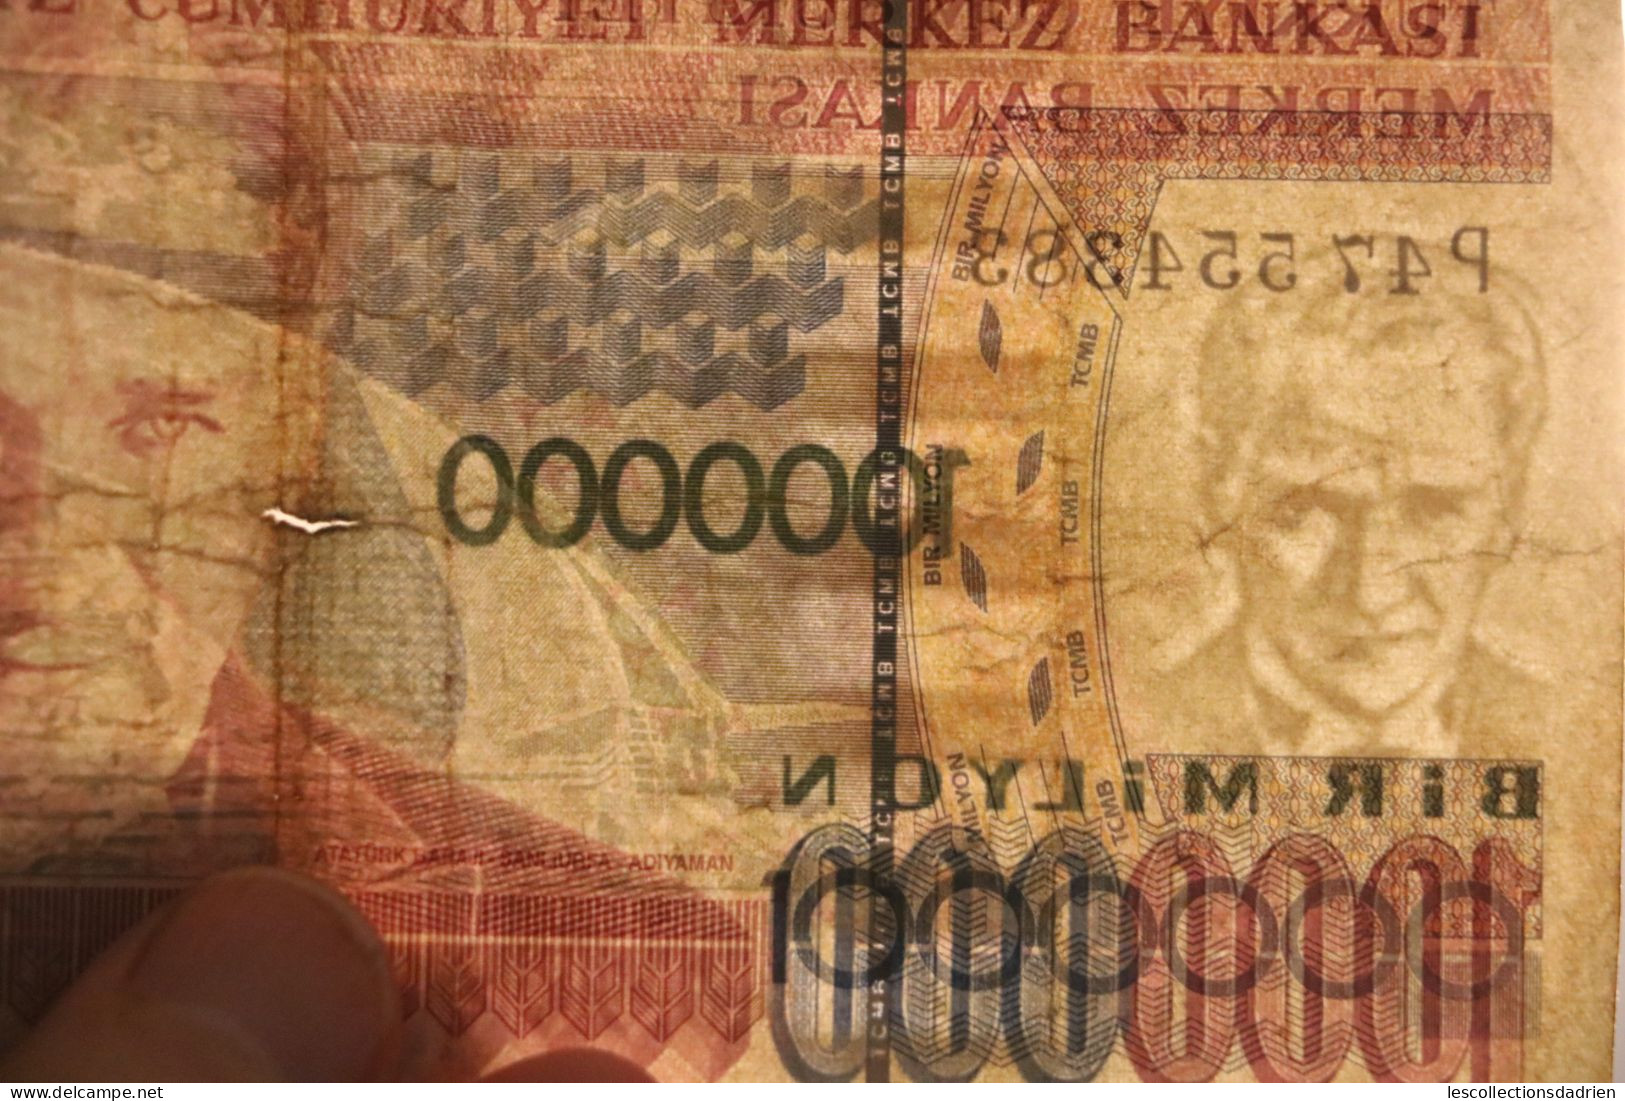 Billet de 1000000 lires turques Turquie - banknote Turkey